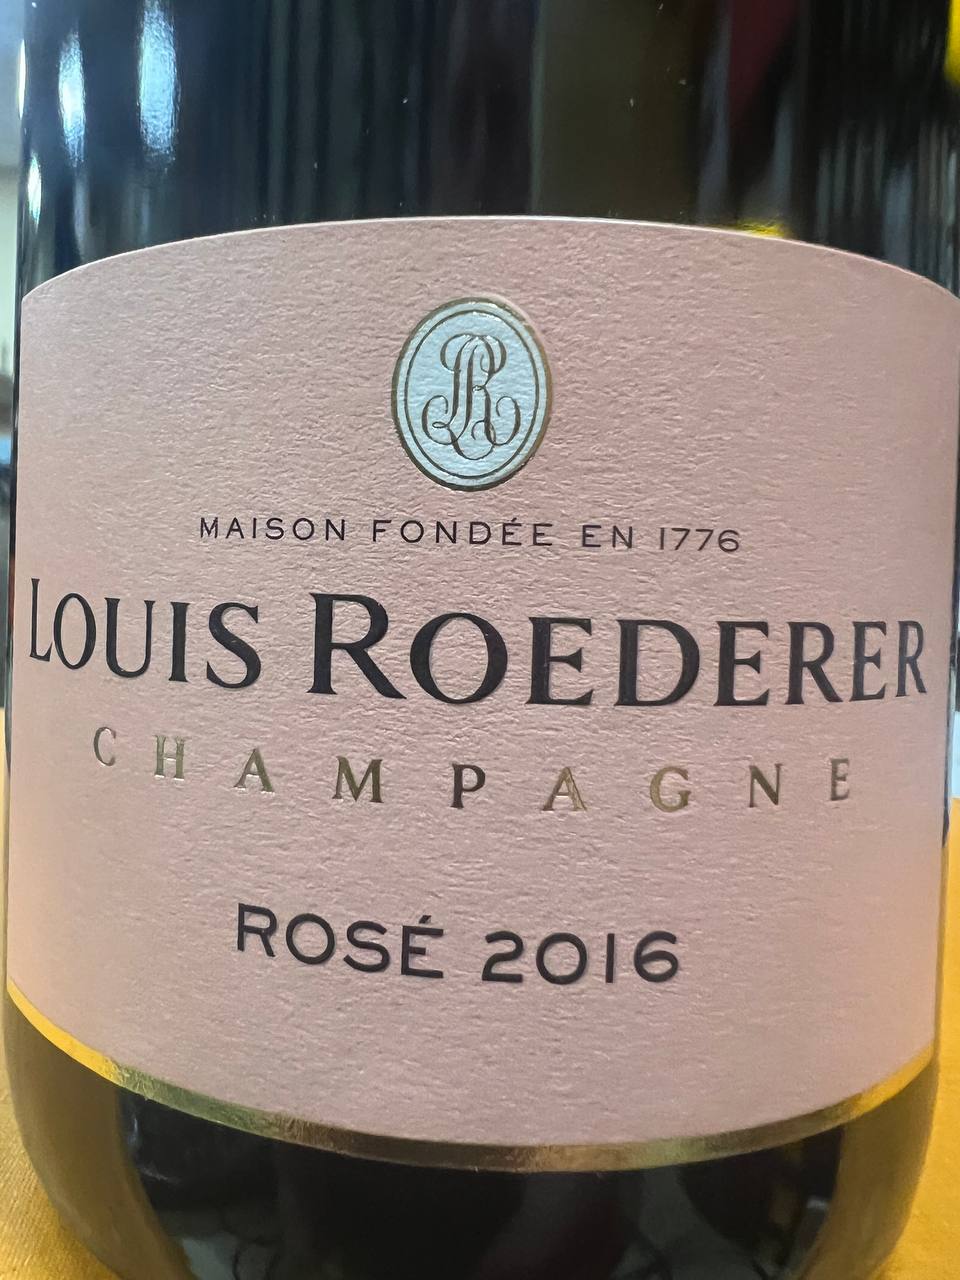 2016 Rosé Vintage Louis Brut Roederer